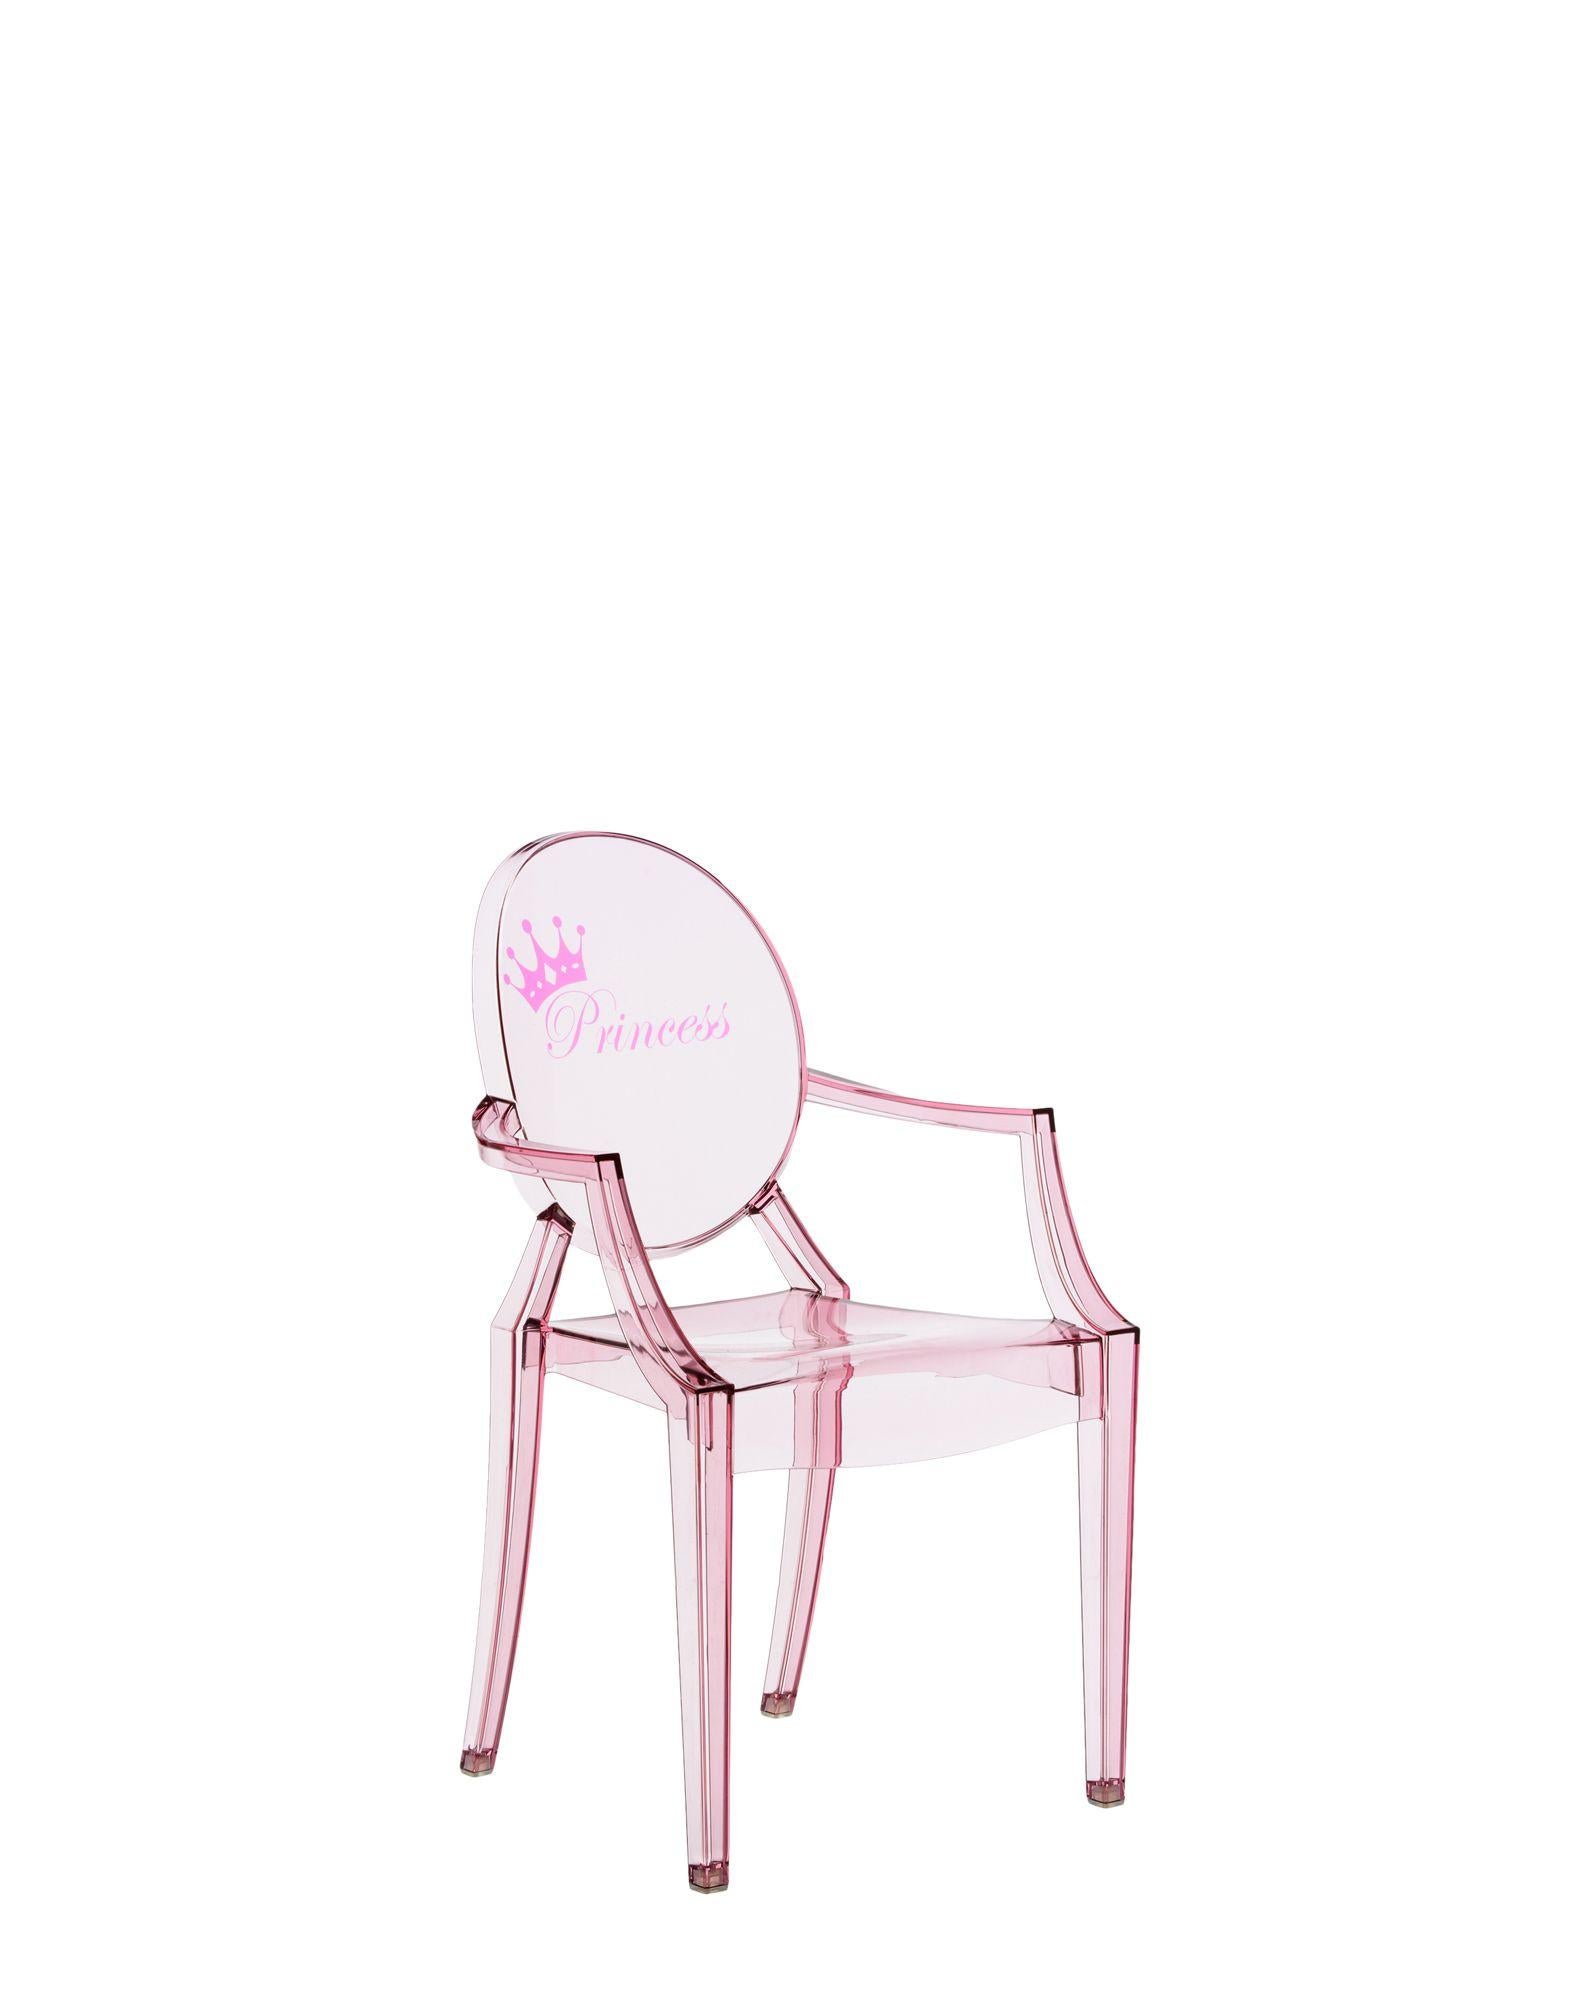 Die Miniaturversion eines der berühmtesten Designstühle ergänzt die Linie Kartell Kids in mehreren neuen Versionen. Der Lou Lou Ghost von Philippe Starck erhält neue und anpassbare Grafiken für die lustige Welt der Kinder.

Abmessungen: Höhe 24,75